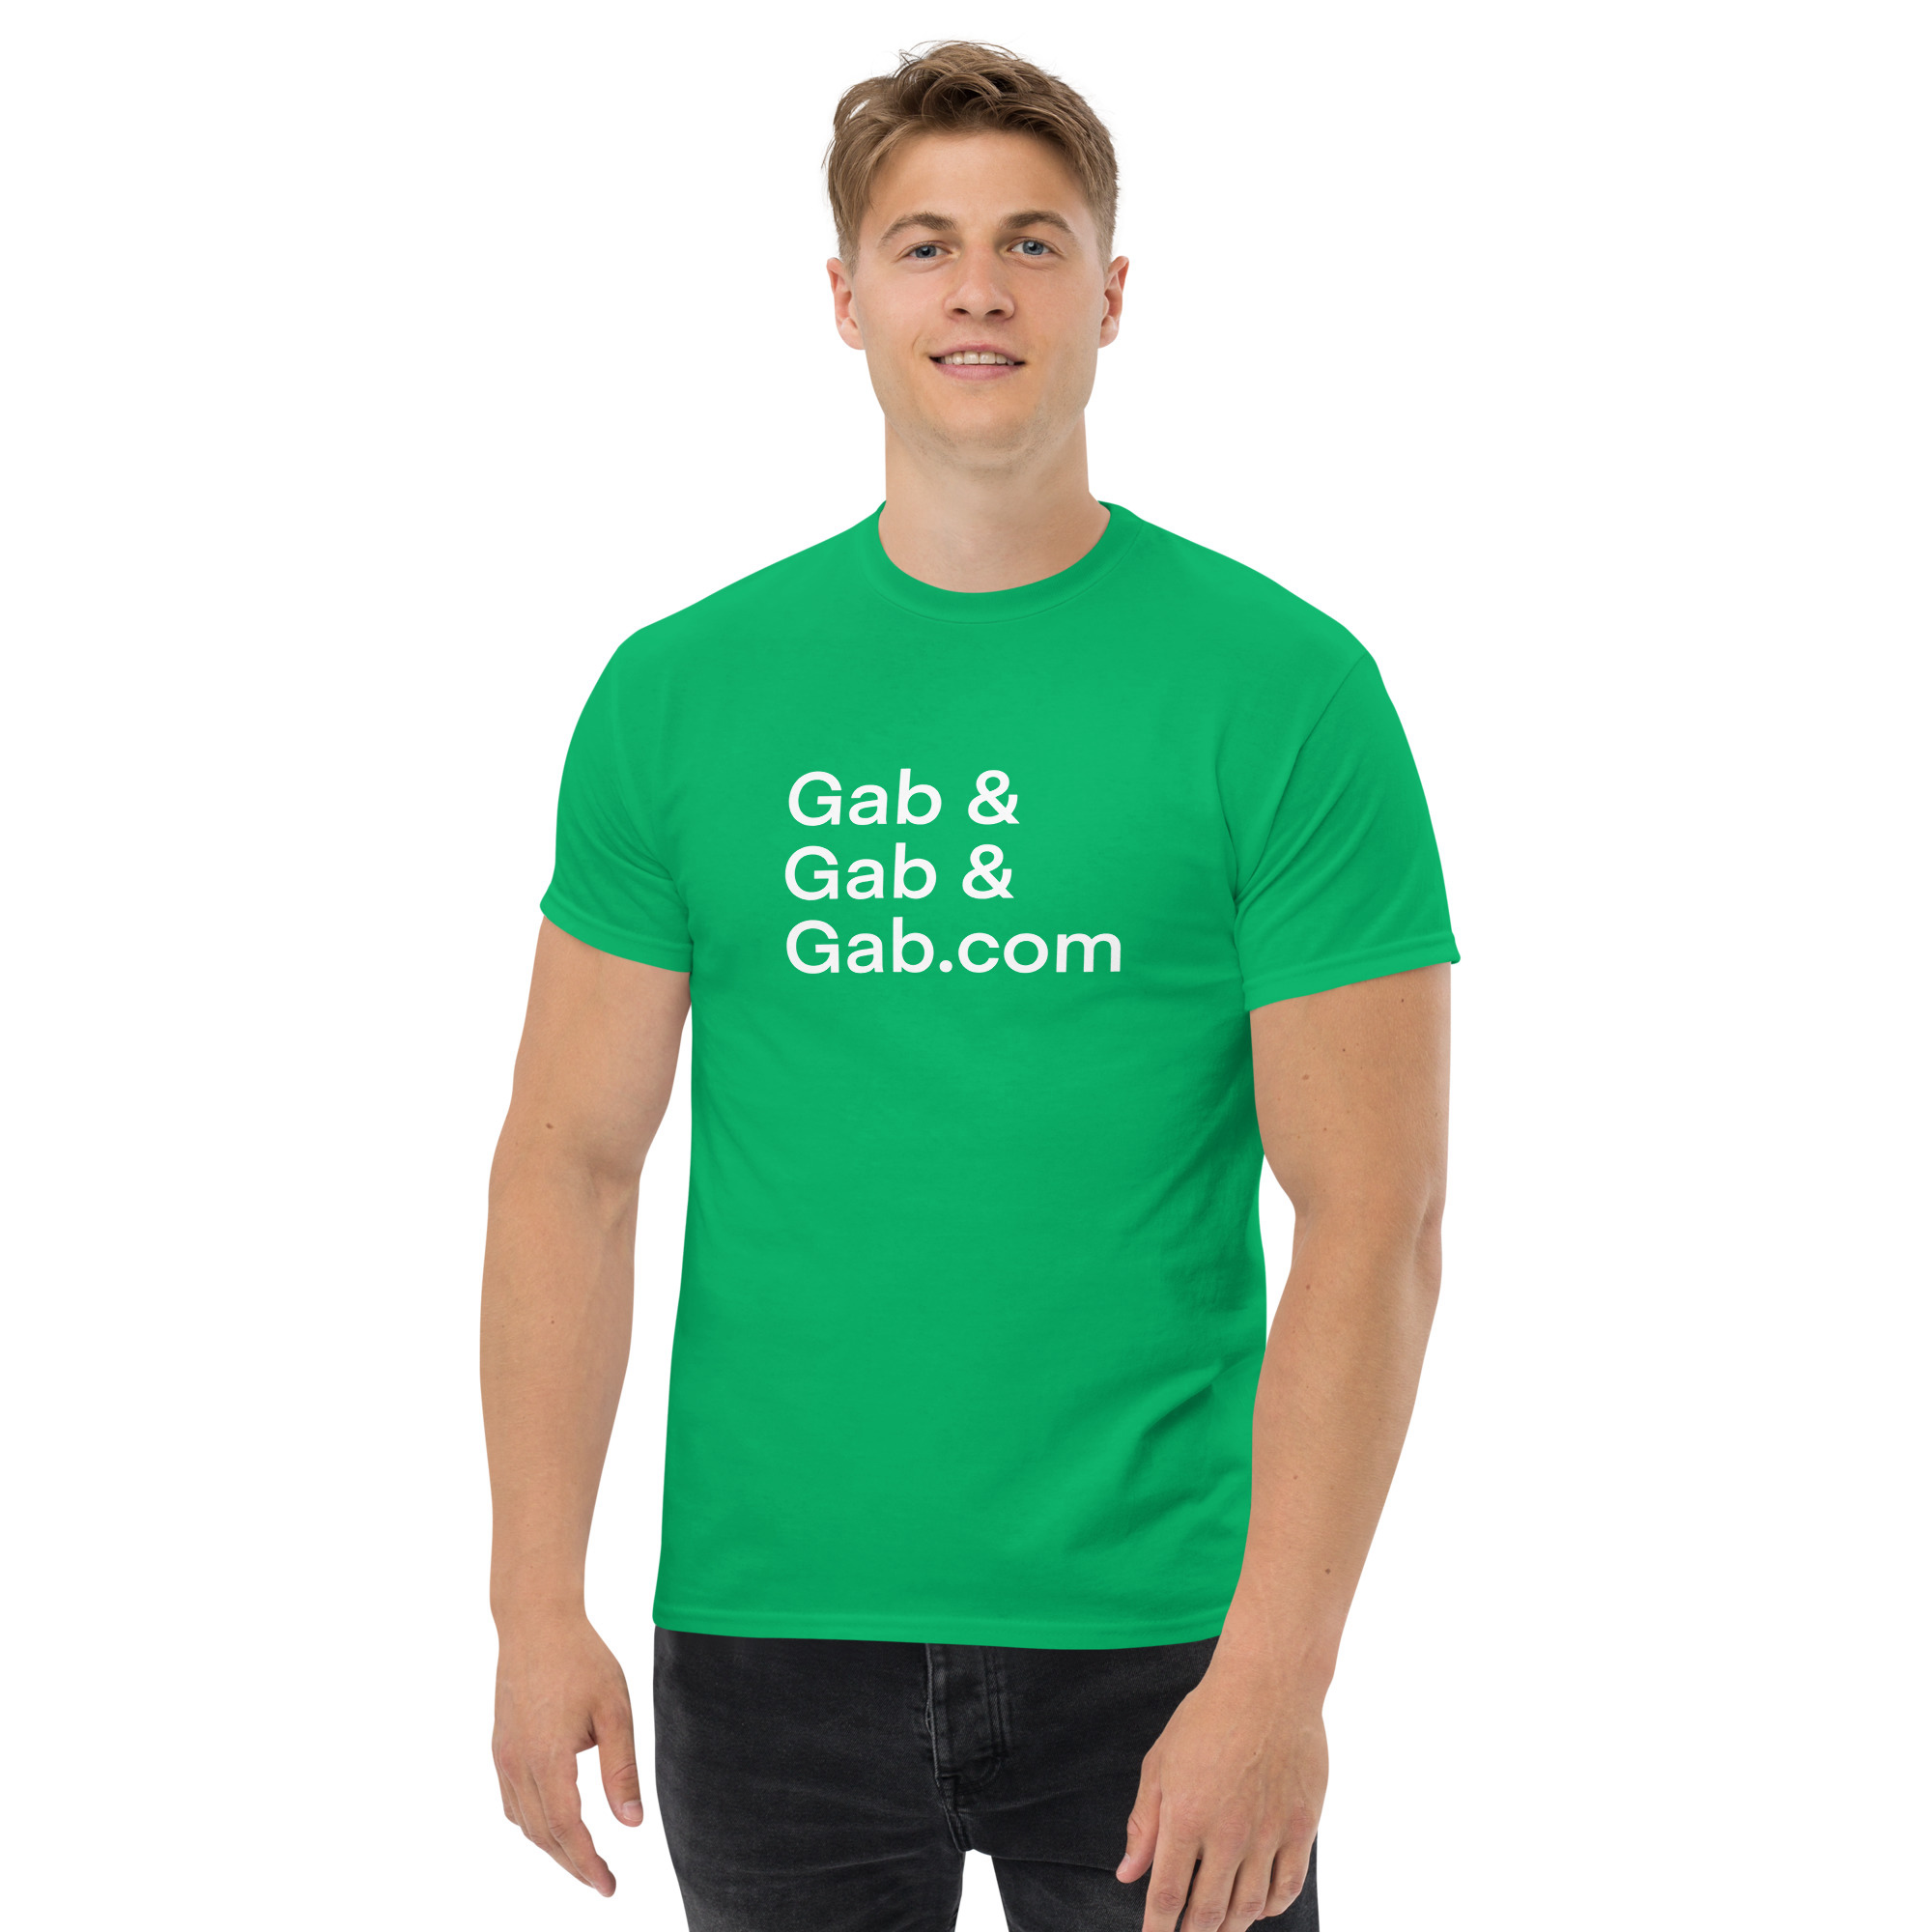 Gab, & Gab, & Gab.com T-Shirt - Irish Green / M